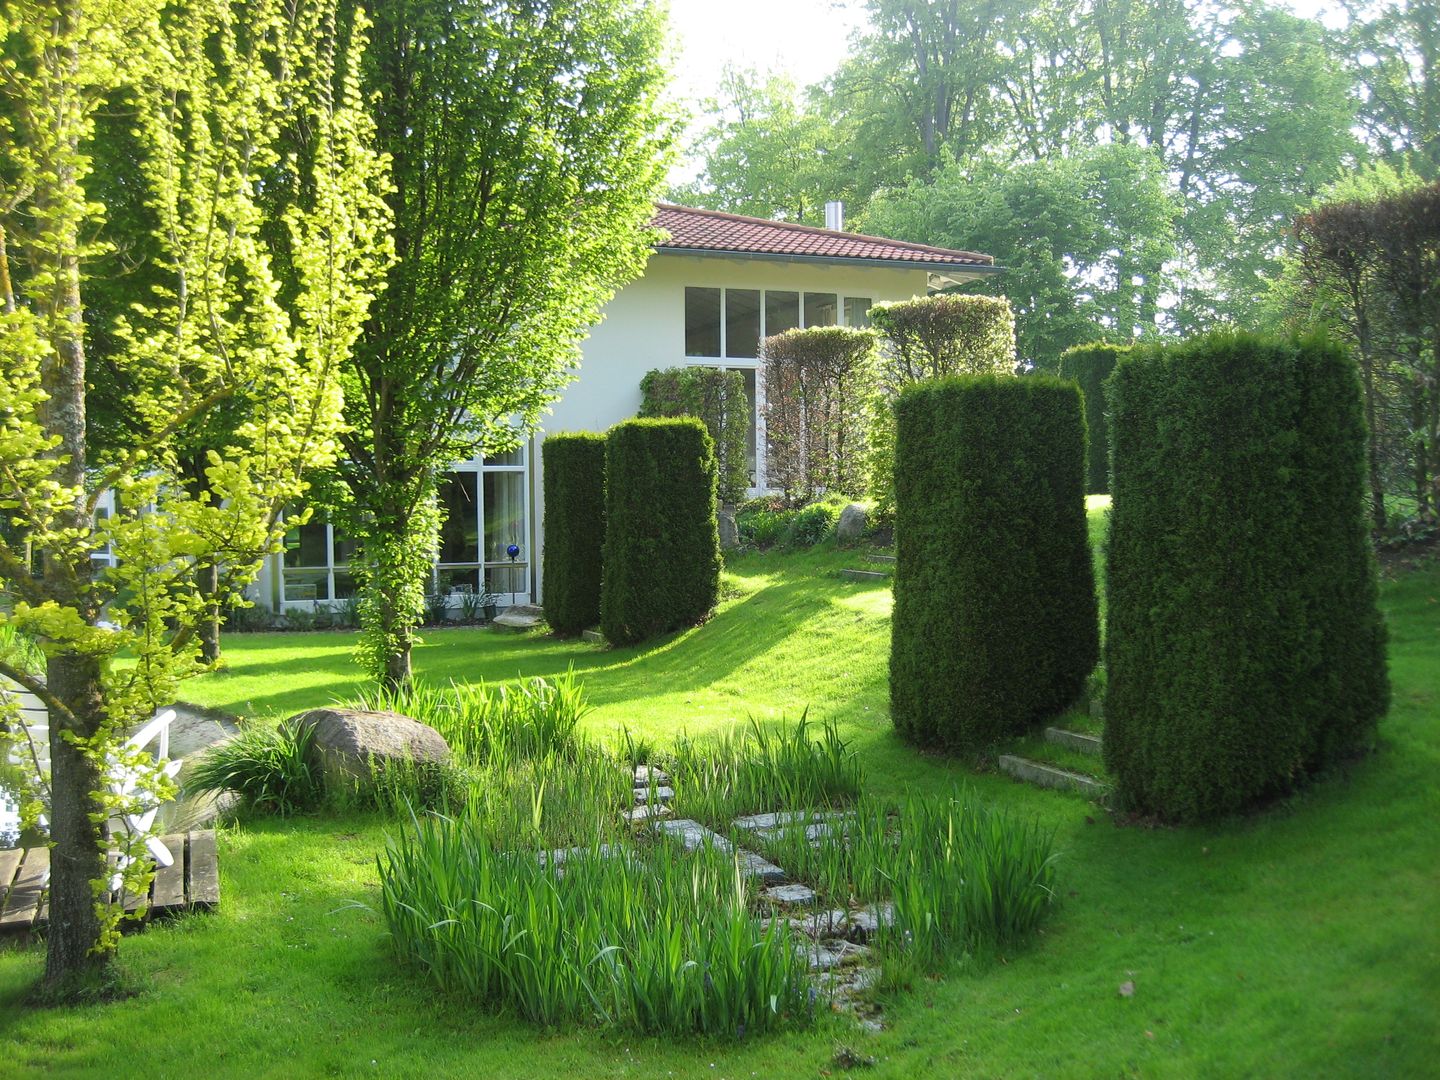 Heckengarten, Architektur Landschaft Garten Architektur Landschaft Garten Jardines de estilo moderno